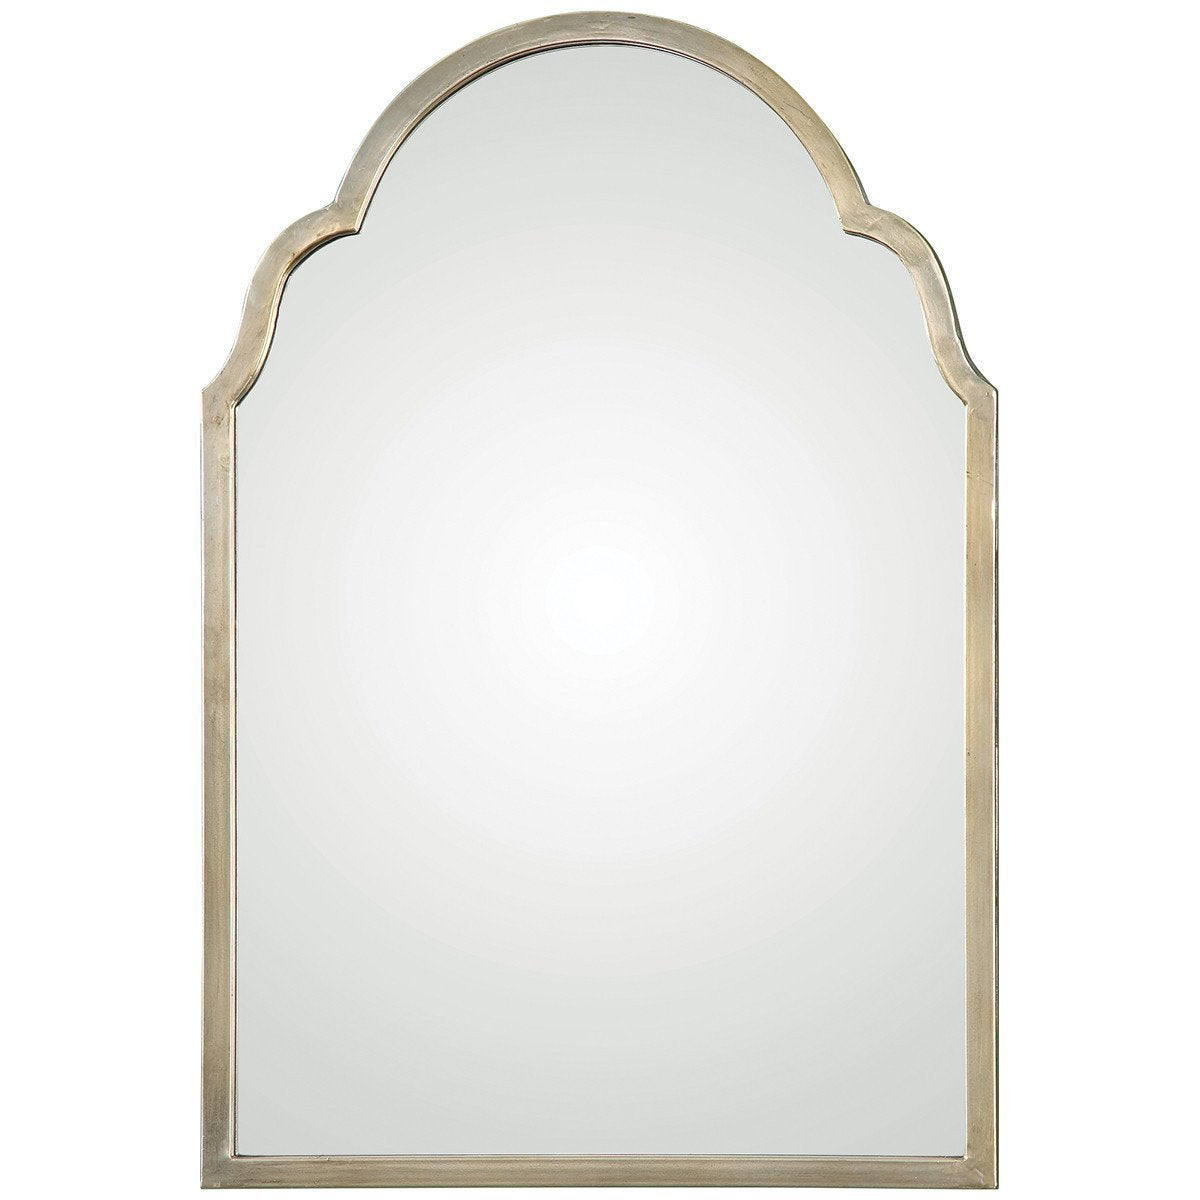 Uttermost Brayden Petite Silver Arch Mirror